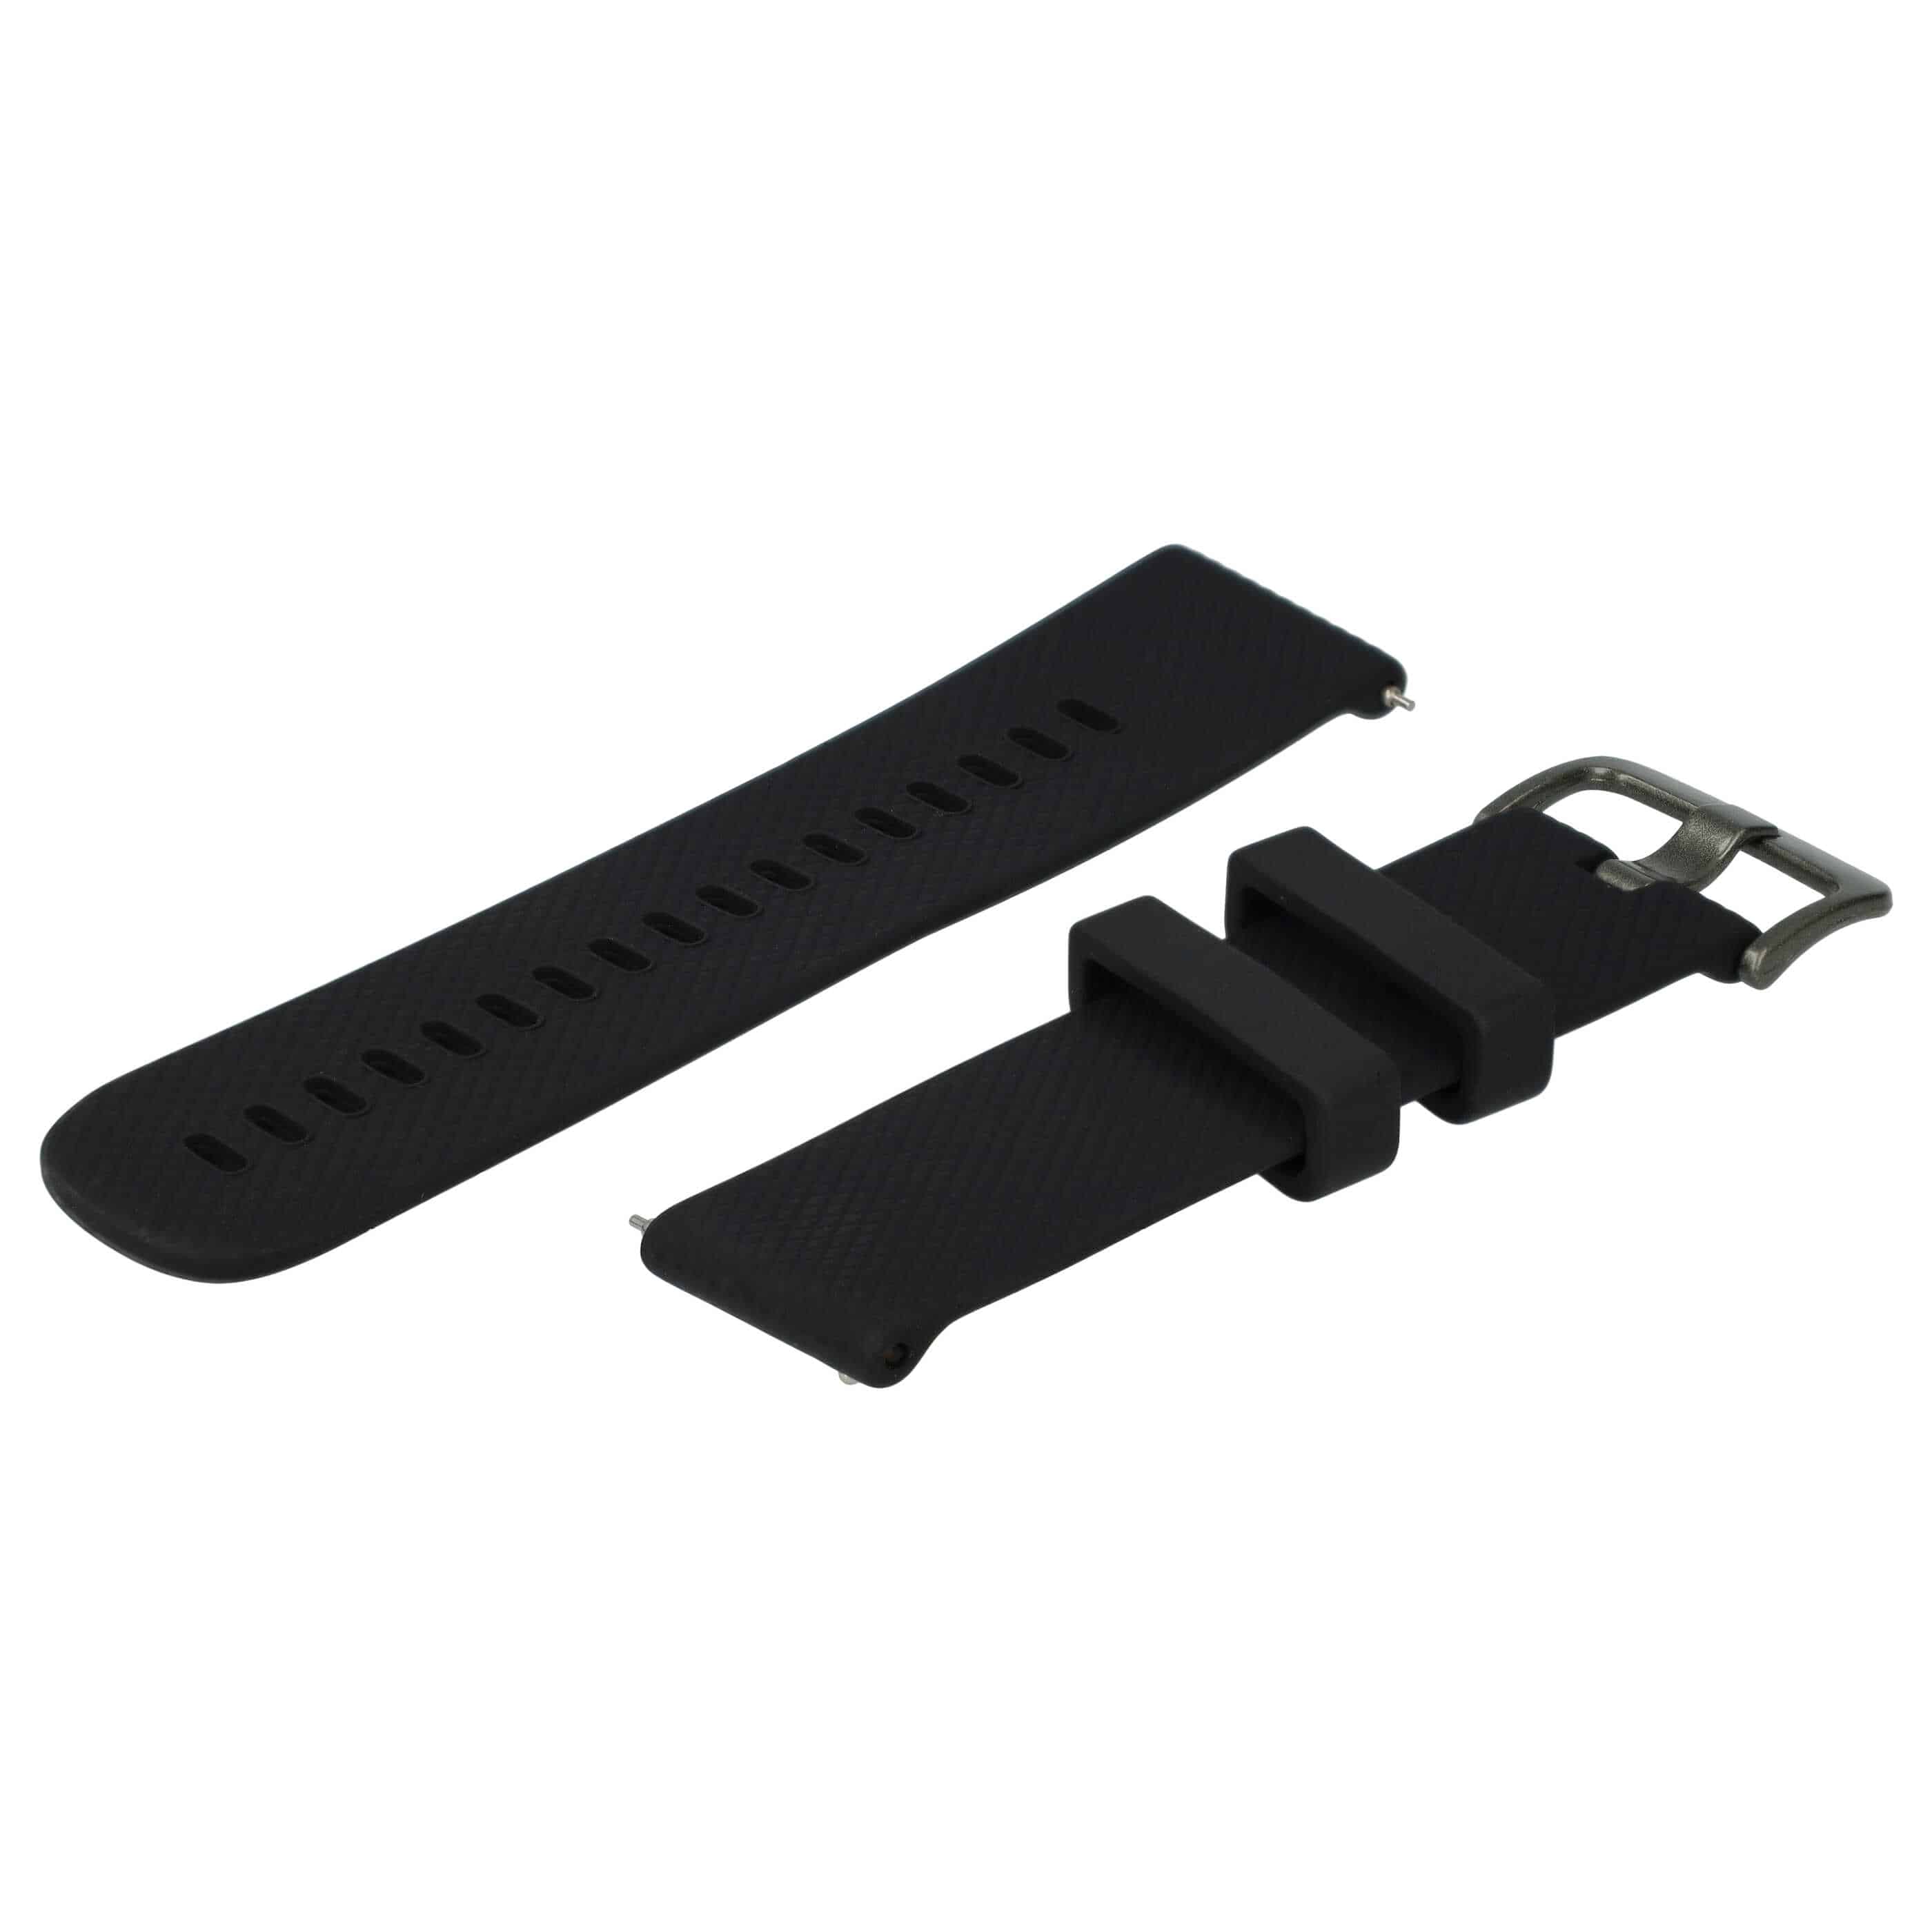 cinturino S per Samsung Galaxy Watch Smartwatch - fino a 232 mm circonferenza del polso, silicone, nero